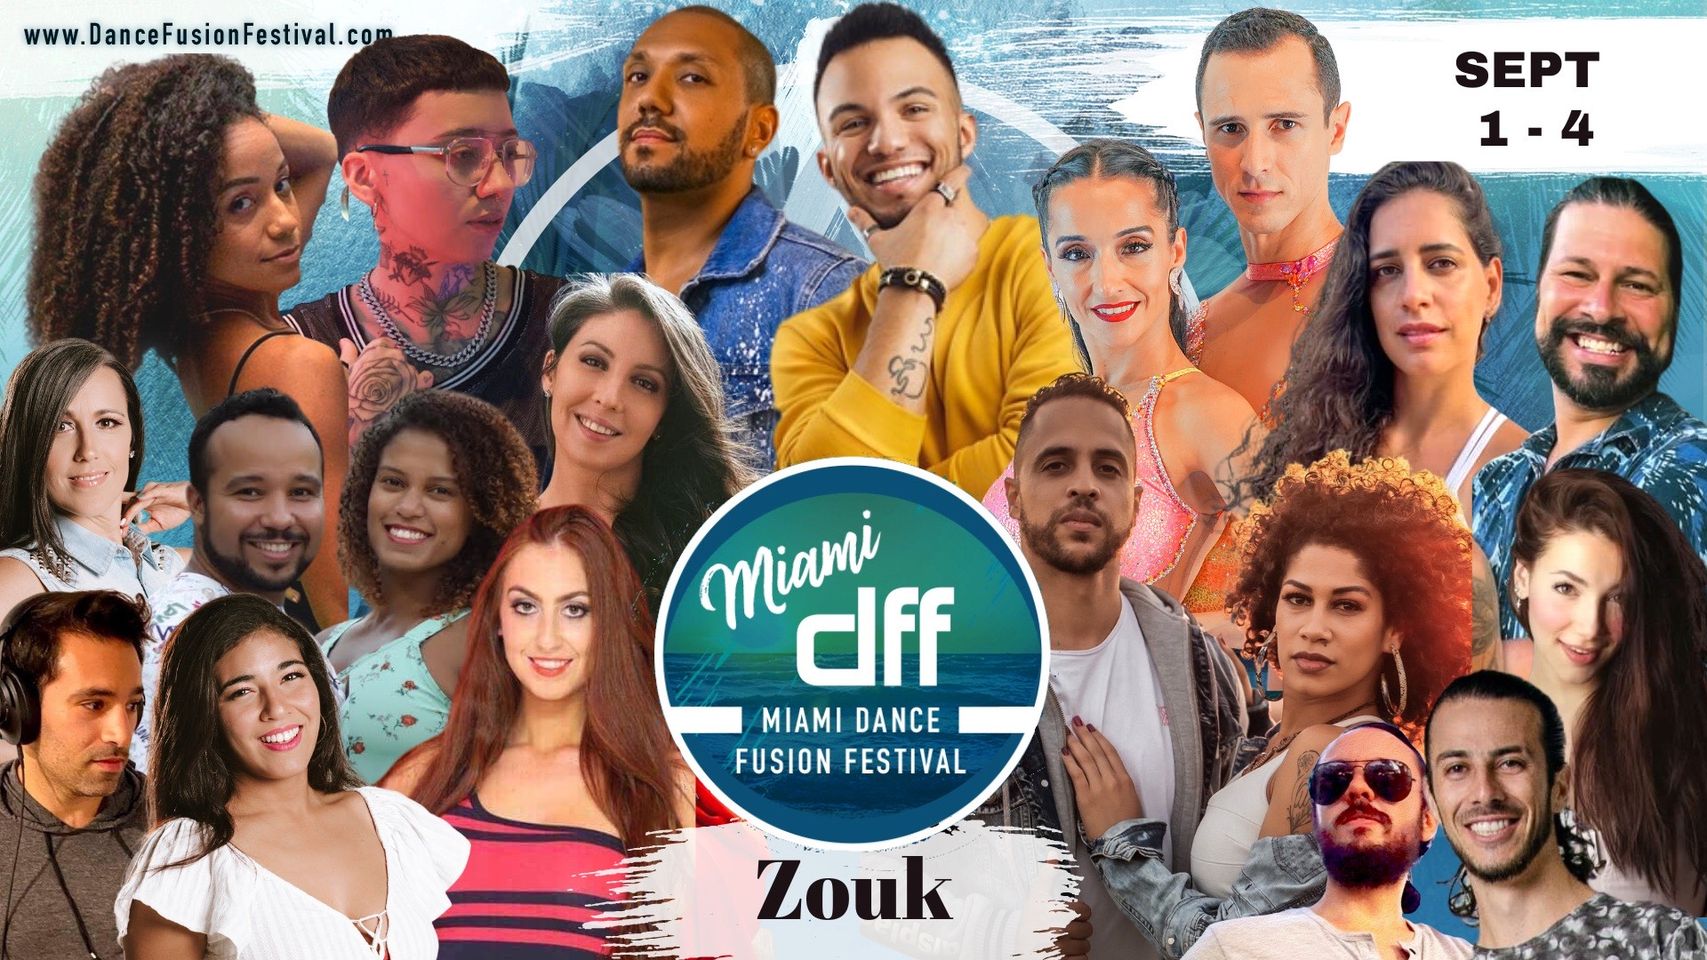 Miami Dance Fusion Festival Zouk Events 4 Dance